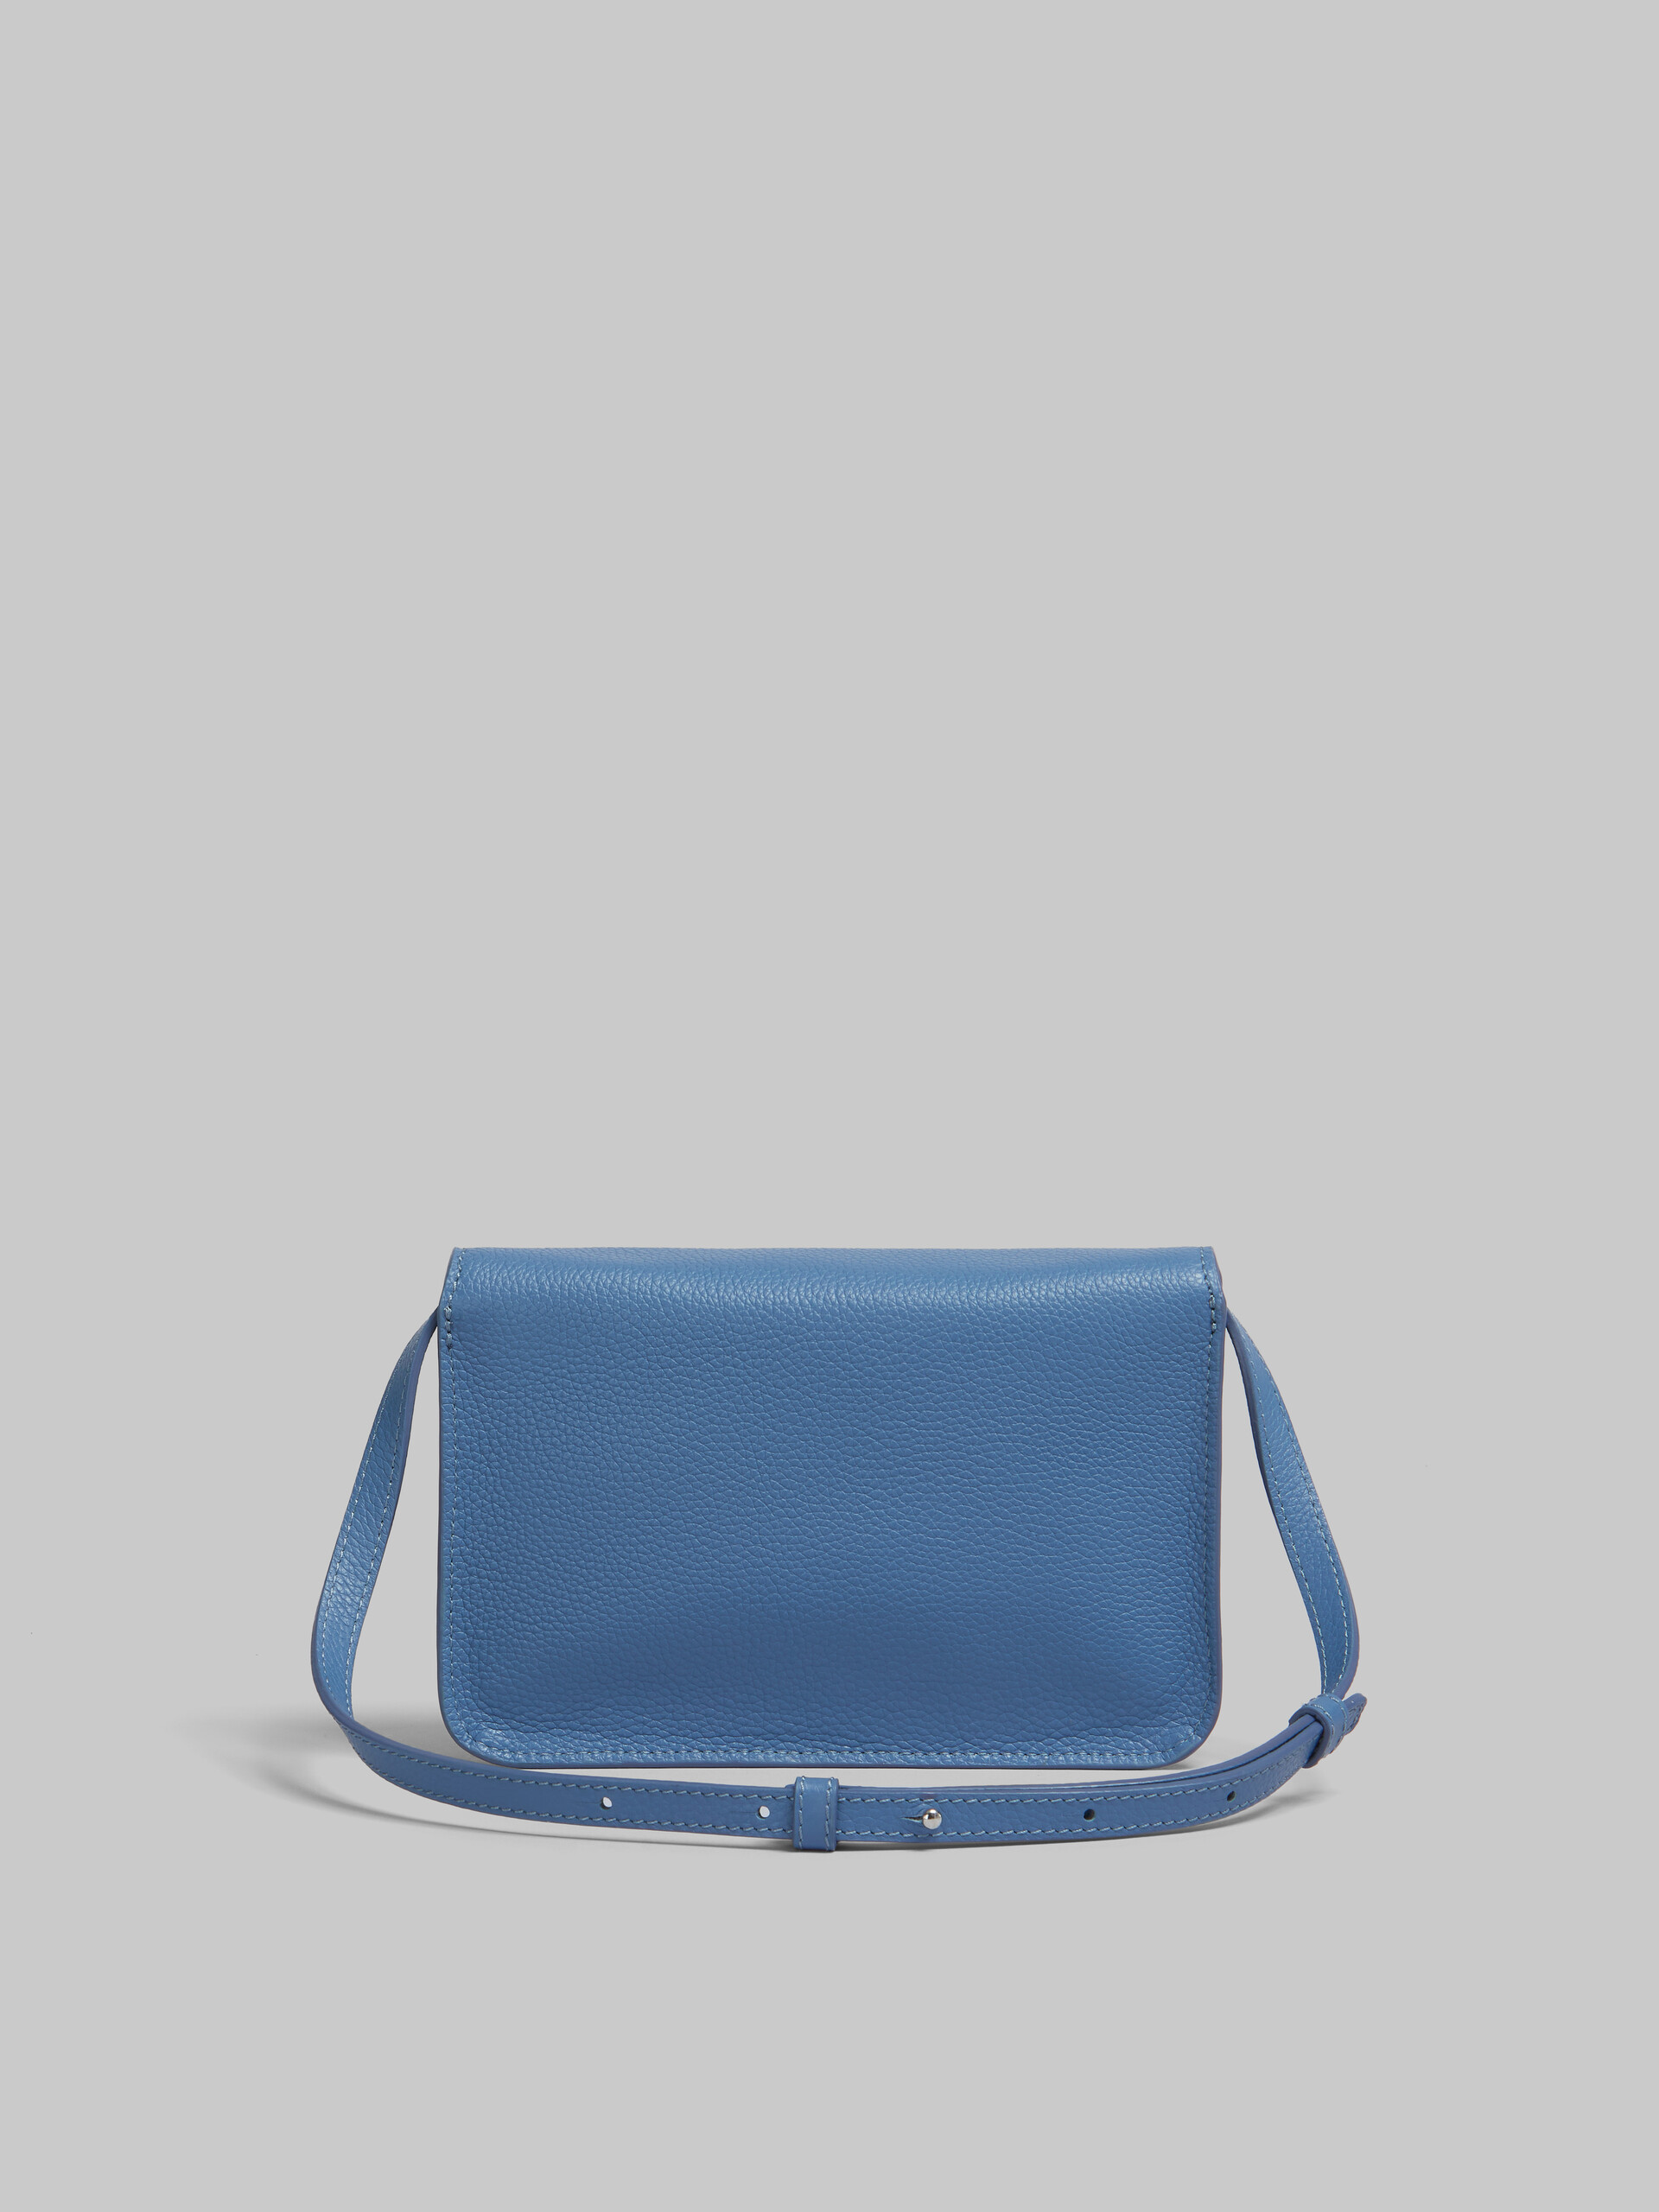 Blue leather shoulder bag with Marni mending - Pochettes - Image 3